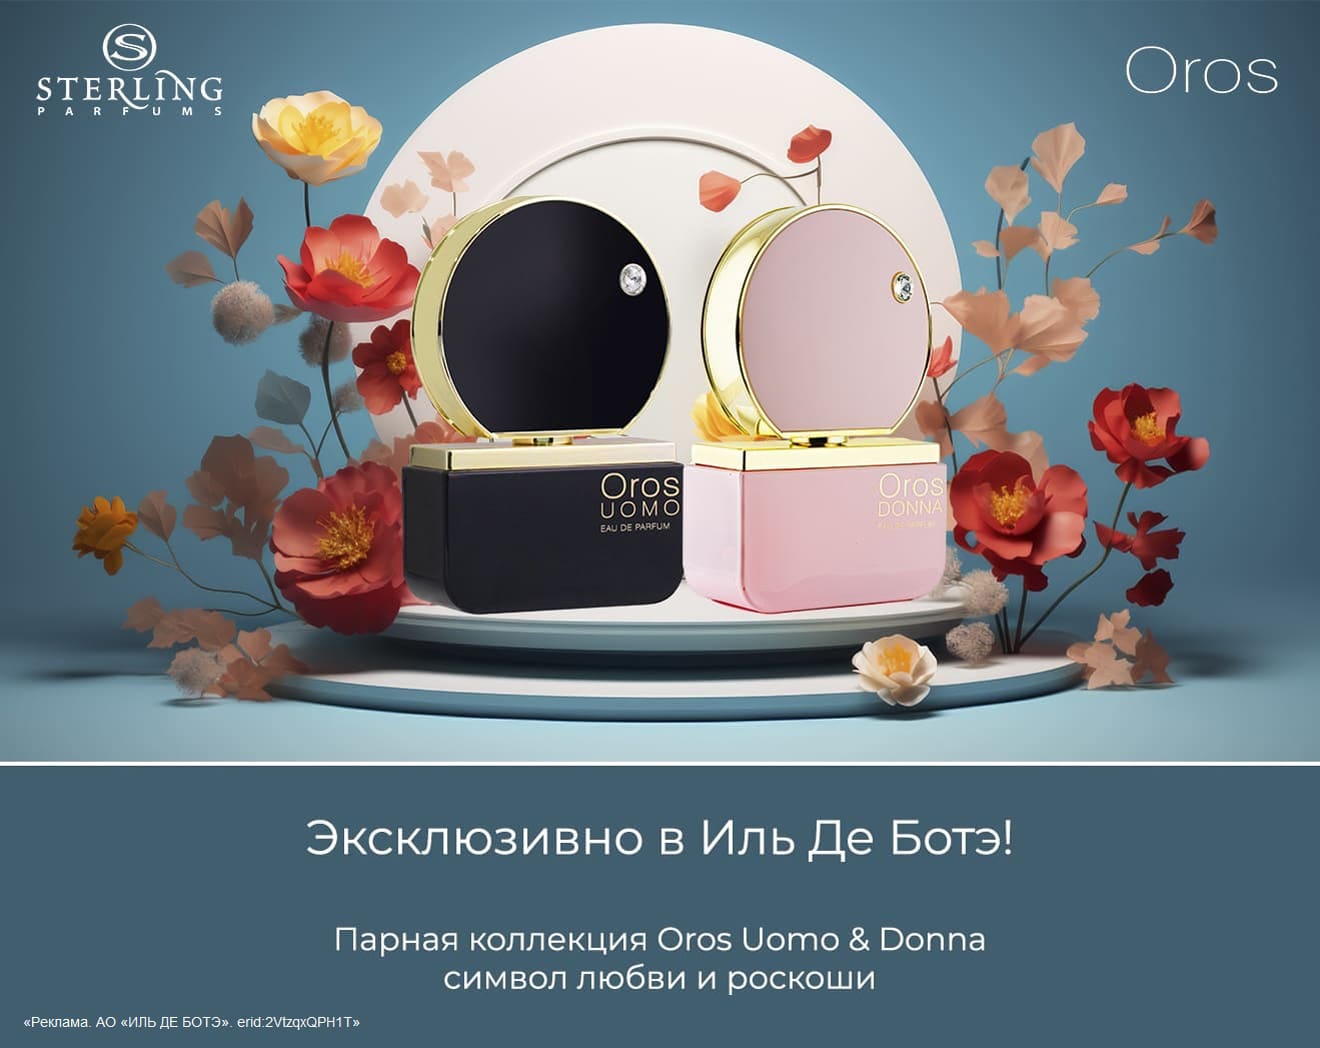 Новые ароматы OROS UOMO & DONNA от STERLING PARFUMS. Эксклюзивно в ИЛЬ ДЕ БОТЭ